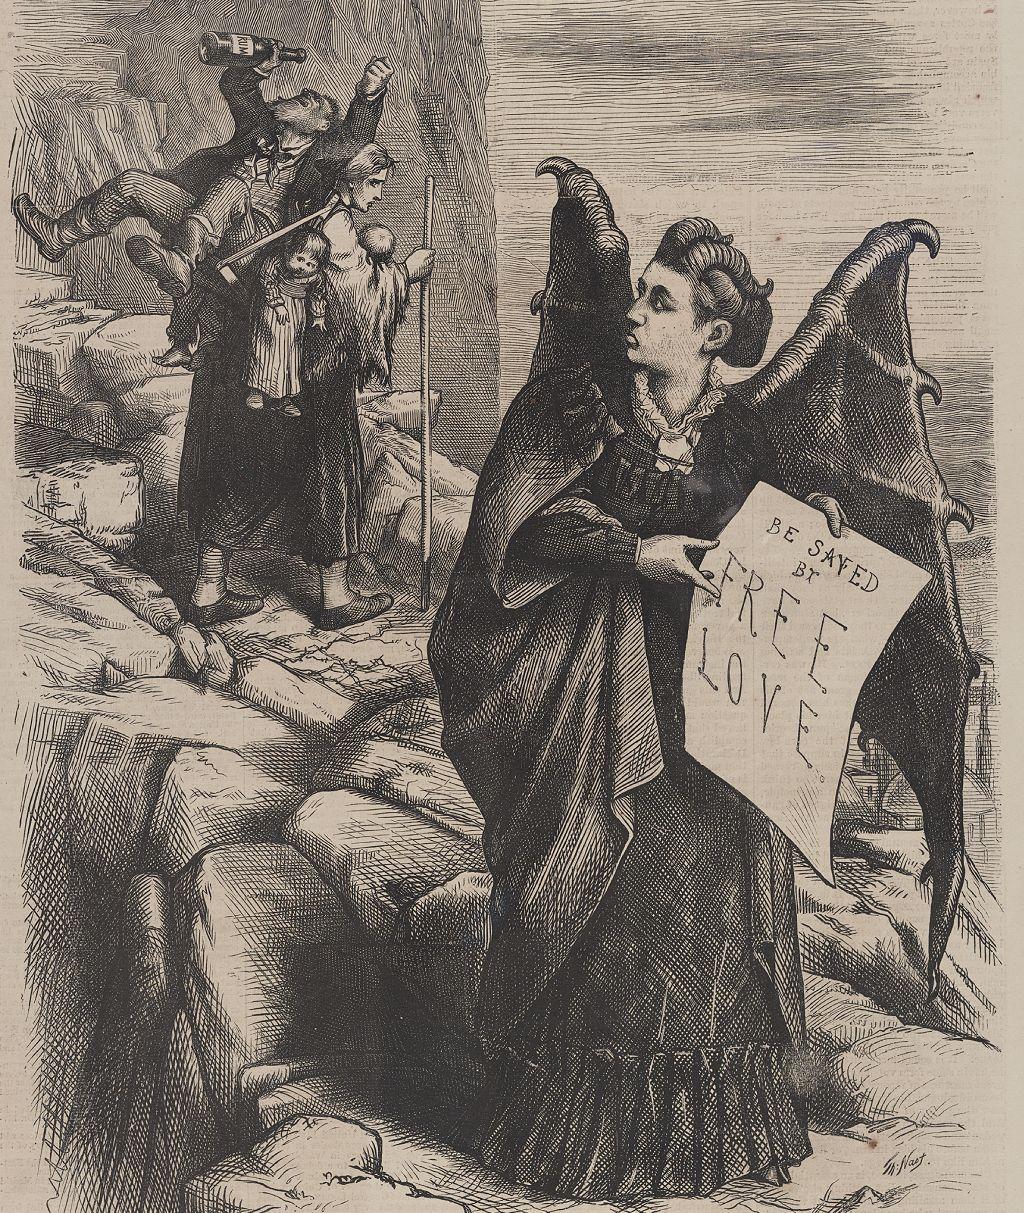 En un escenario rocoso, Woodhull aparece alada y con el cartel, y la mujer pobre con toda su carga alejándose detrás